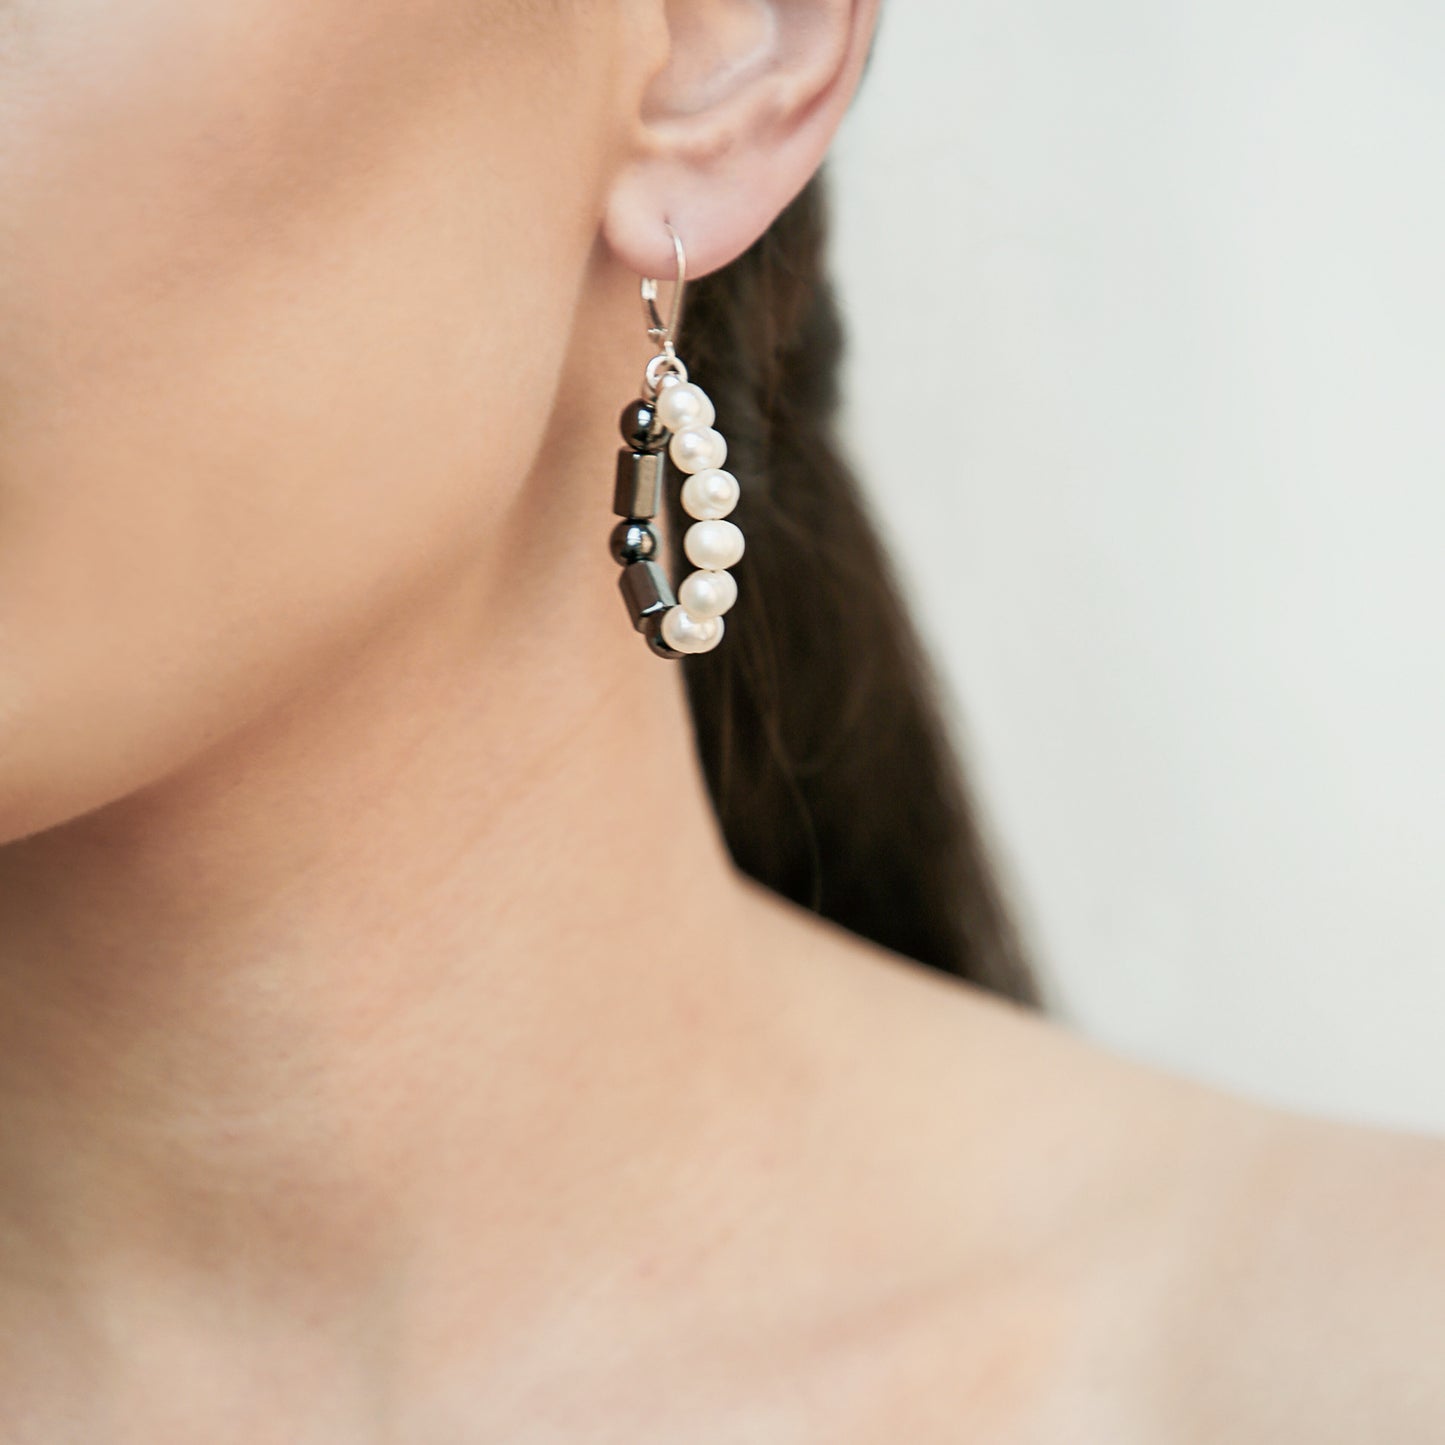 Medium Hoop Earrings with Freshwater Pearls and Hematine